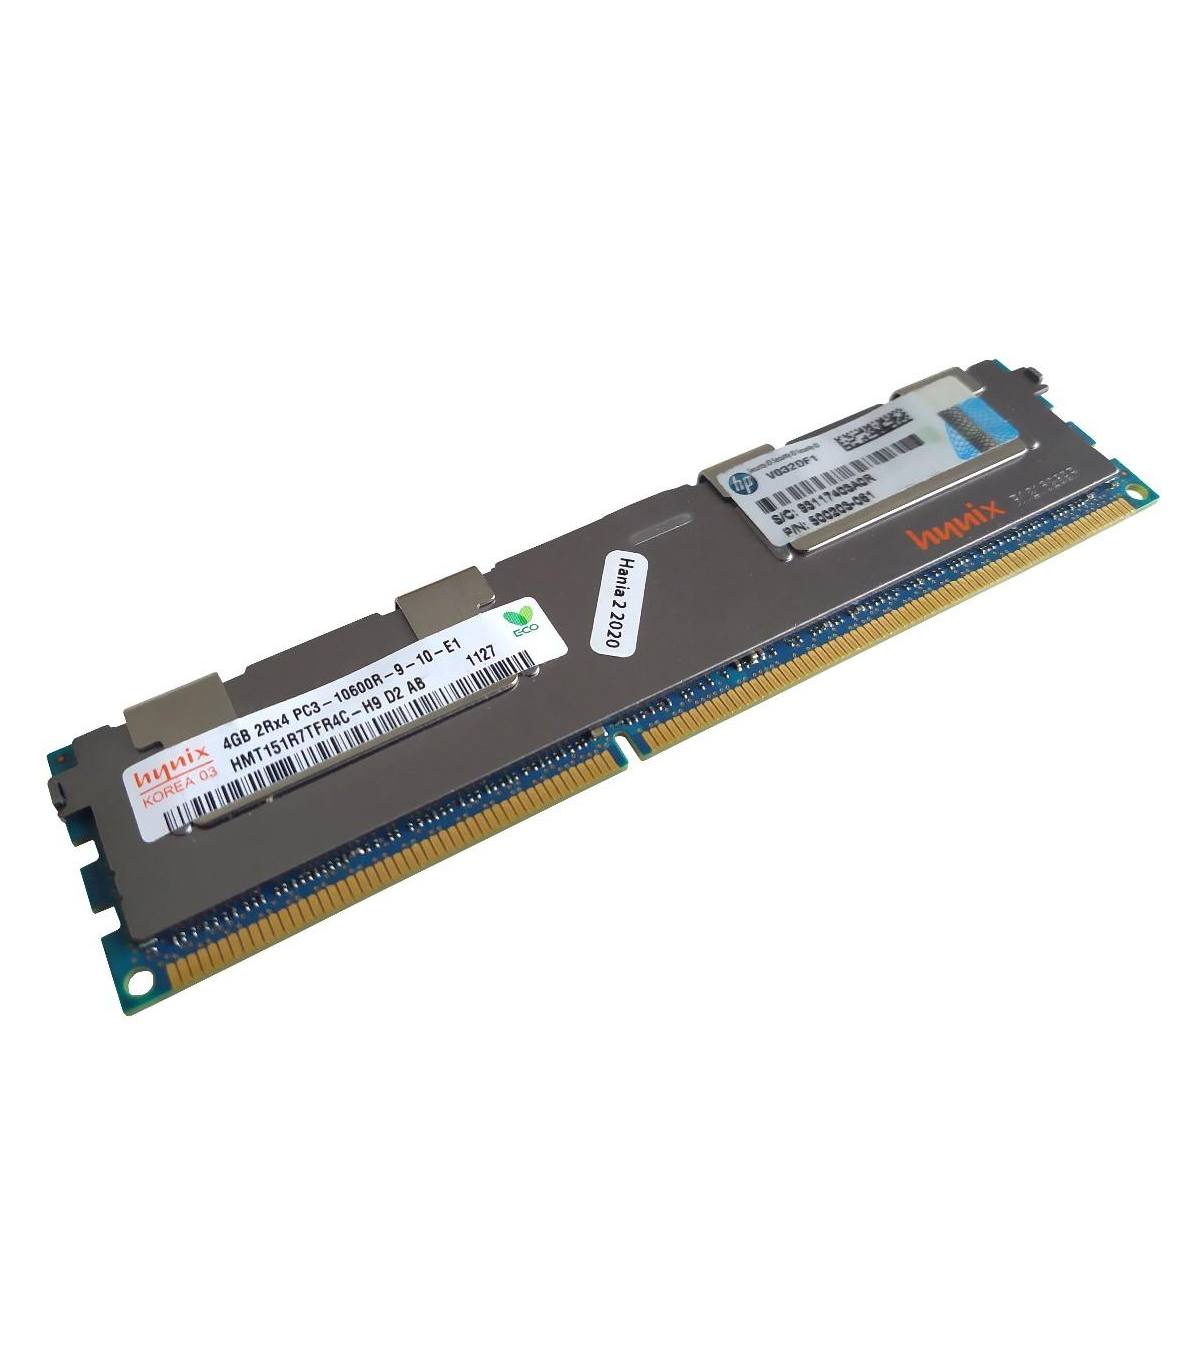 RAM HYNIX / HP 4GB 2Rx4 PC3 10600R HMT151R7TFR4C-H9 D2 AB 1127